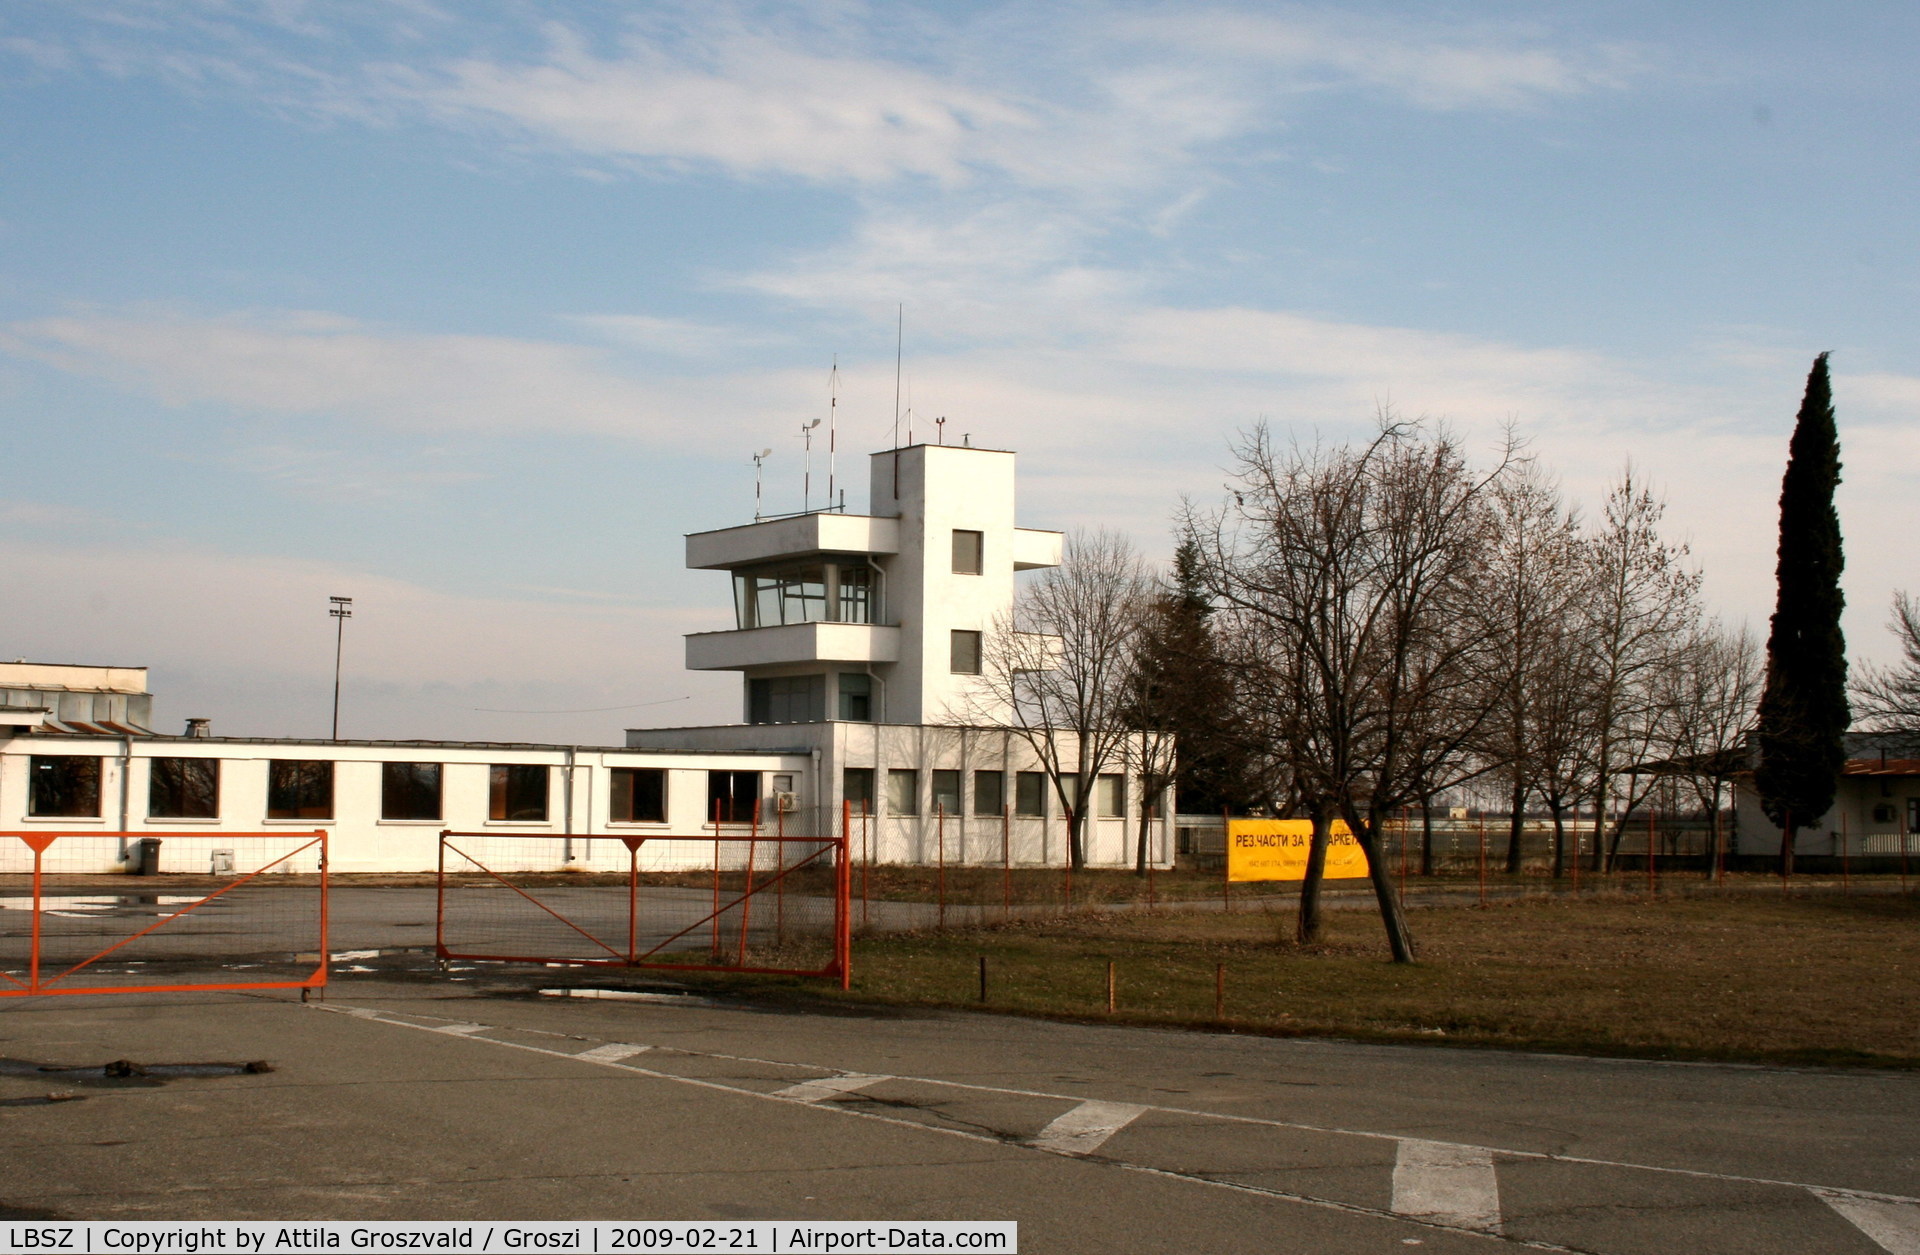 Stara Zagora International Airport, Stara Zagora Bulgaria (LBSZ) - Stara Zagora inactiv International Airport